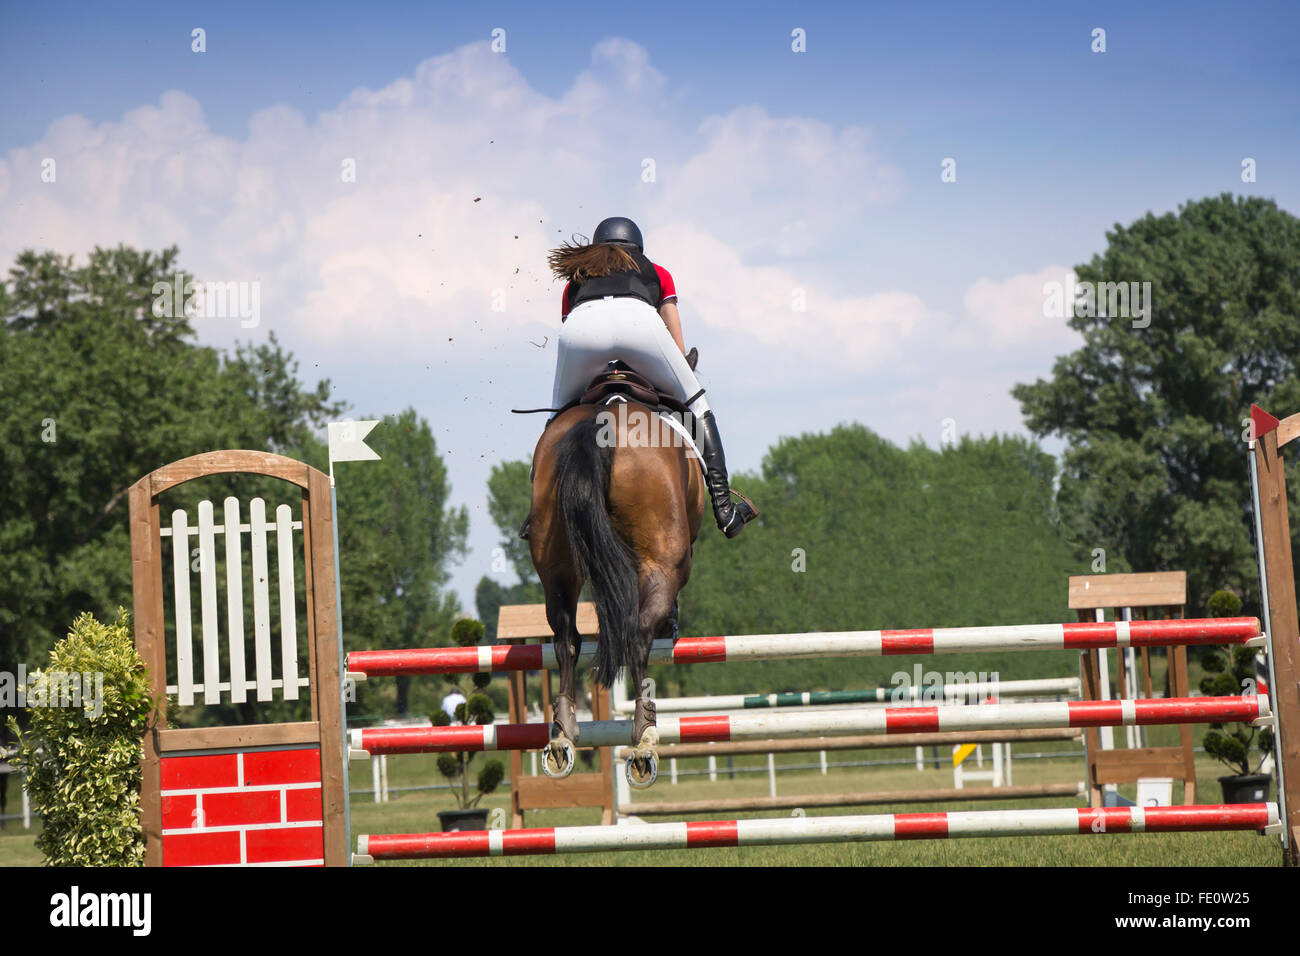 Joven saltando a caballo compitiendo en torneos ecuestres Foto de stock